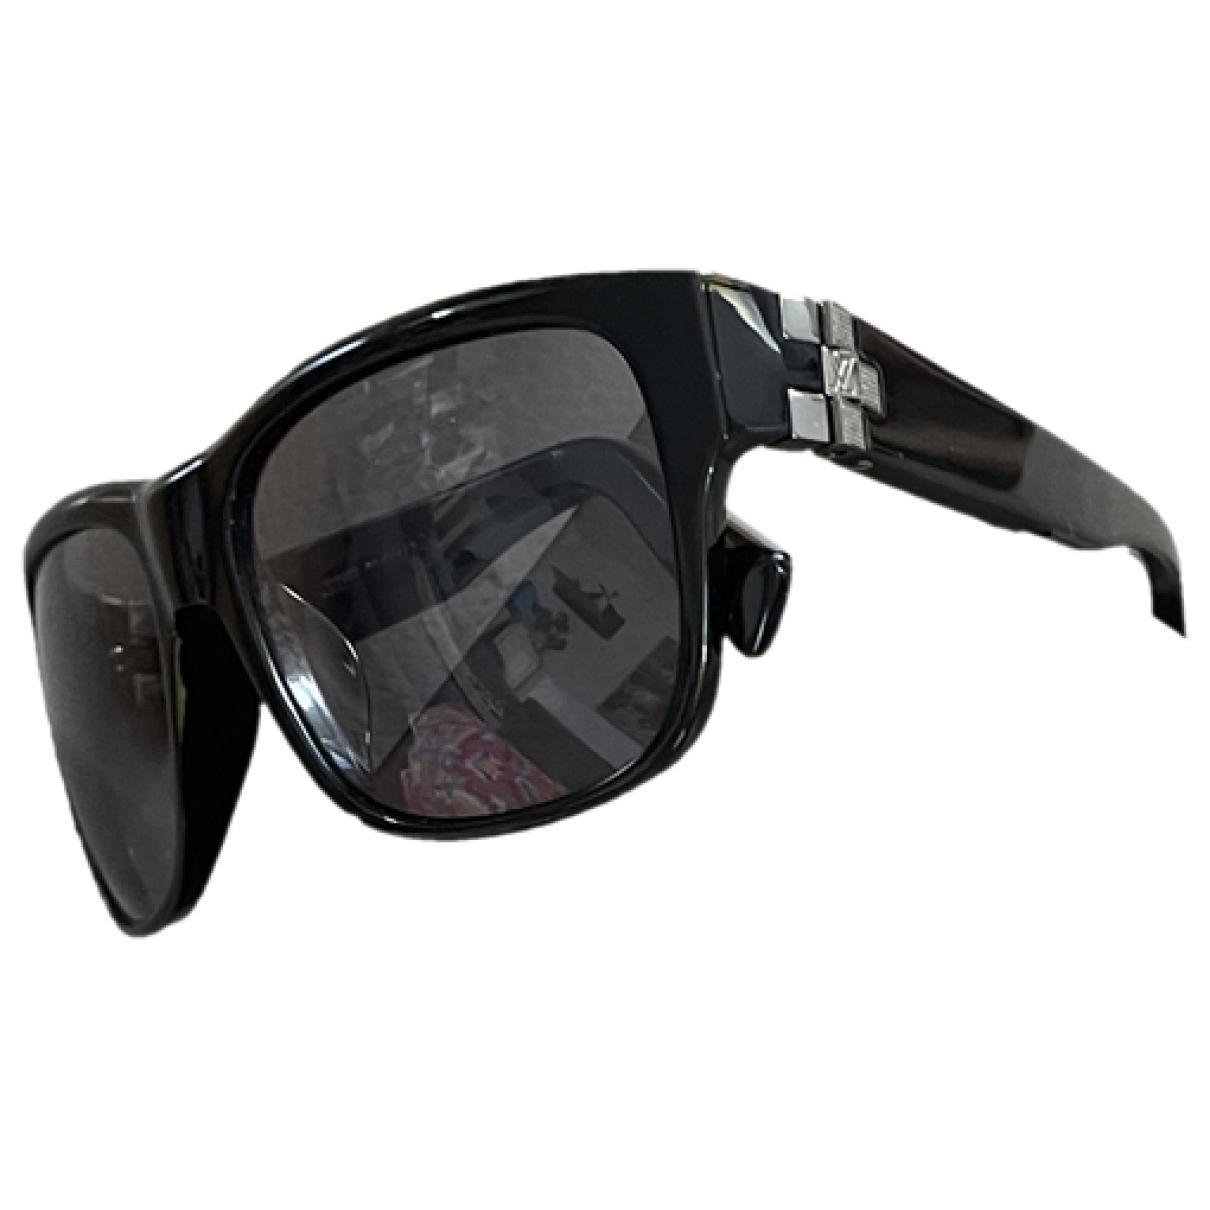 Sunglasses Louis Vuitton Black in Plastic - 27302967